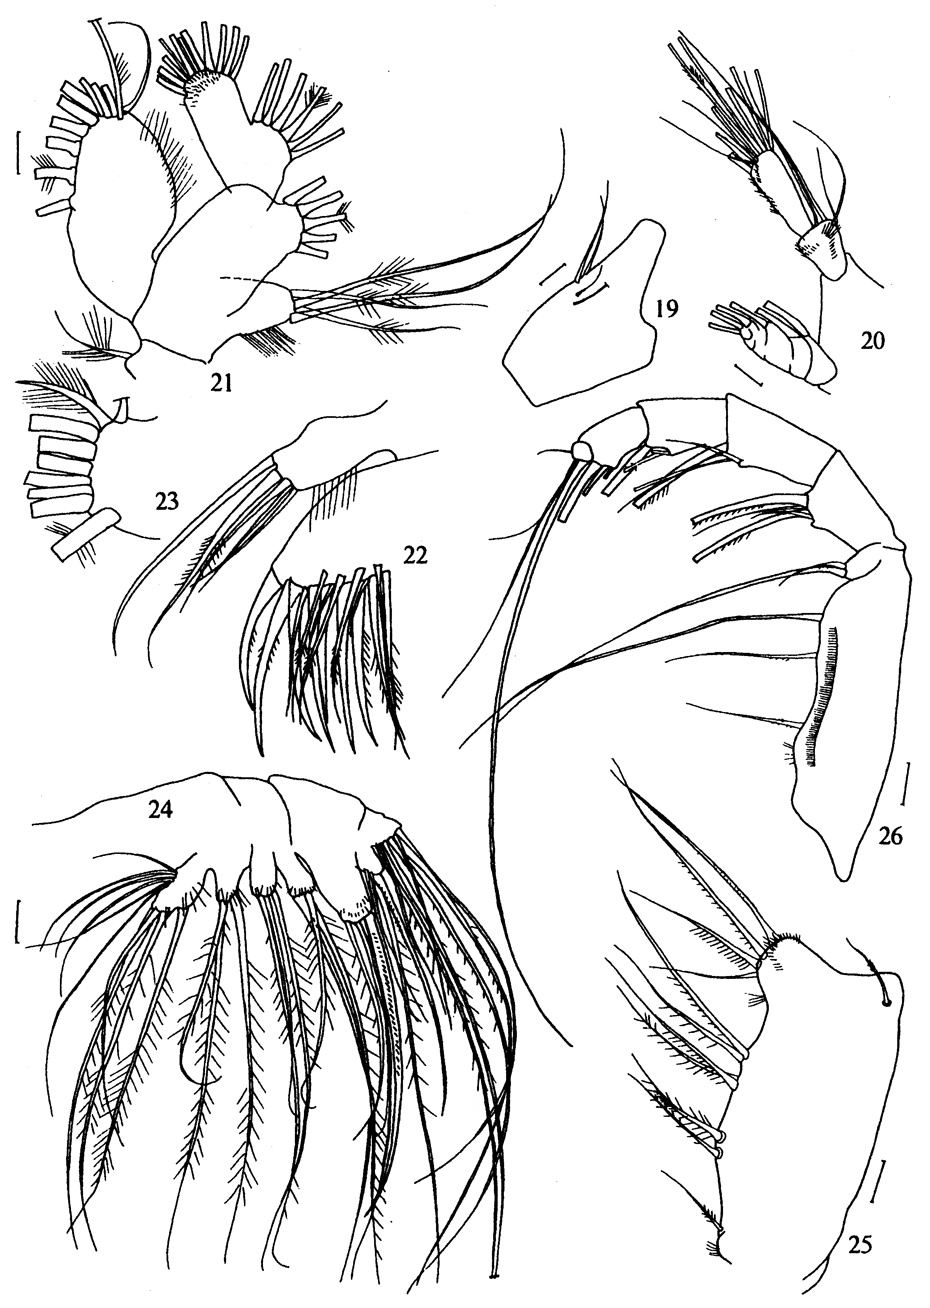 Espèce Metridia ferrarii - Planche 7 de figures morphologiques